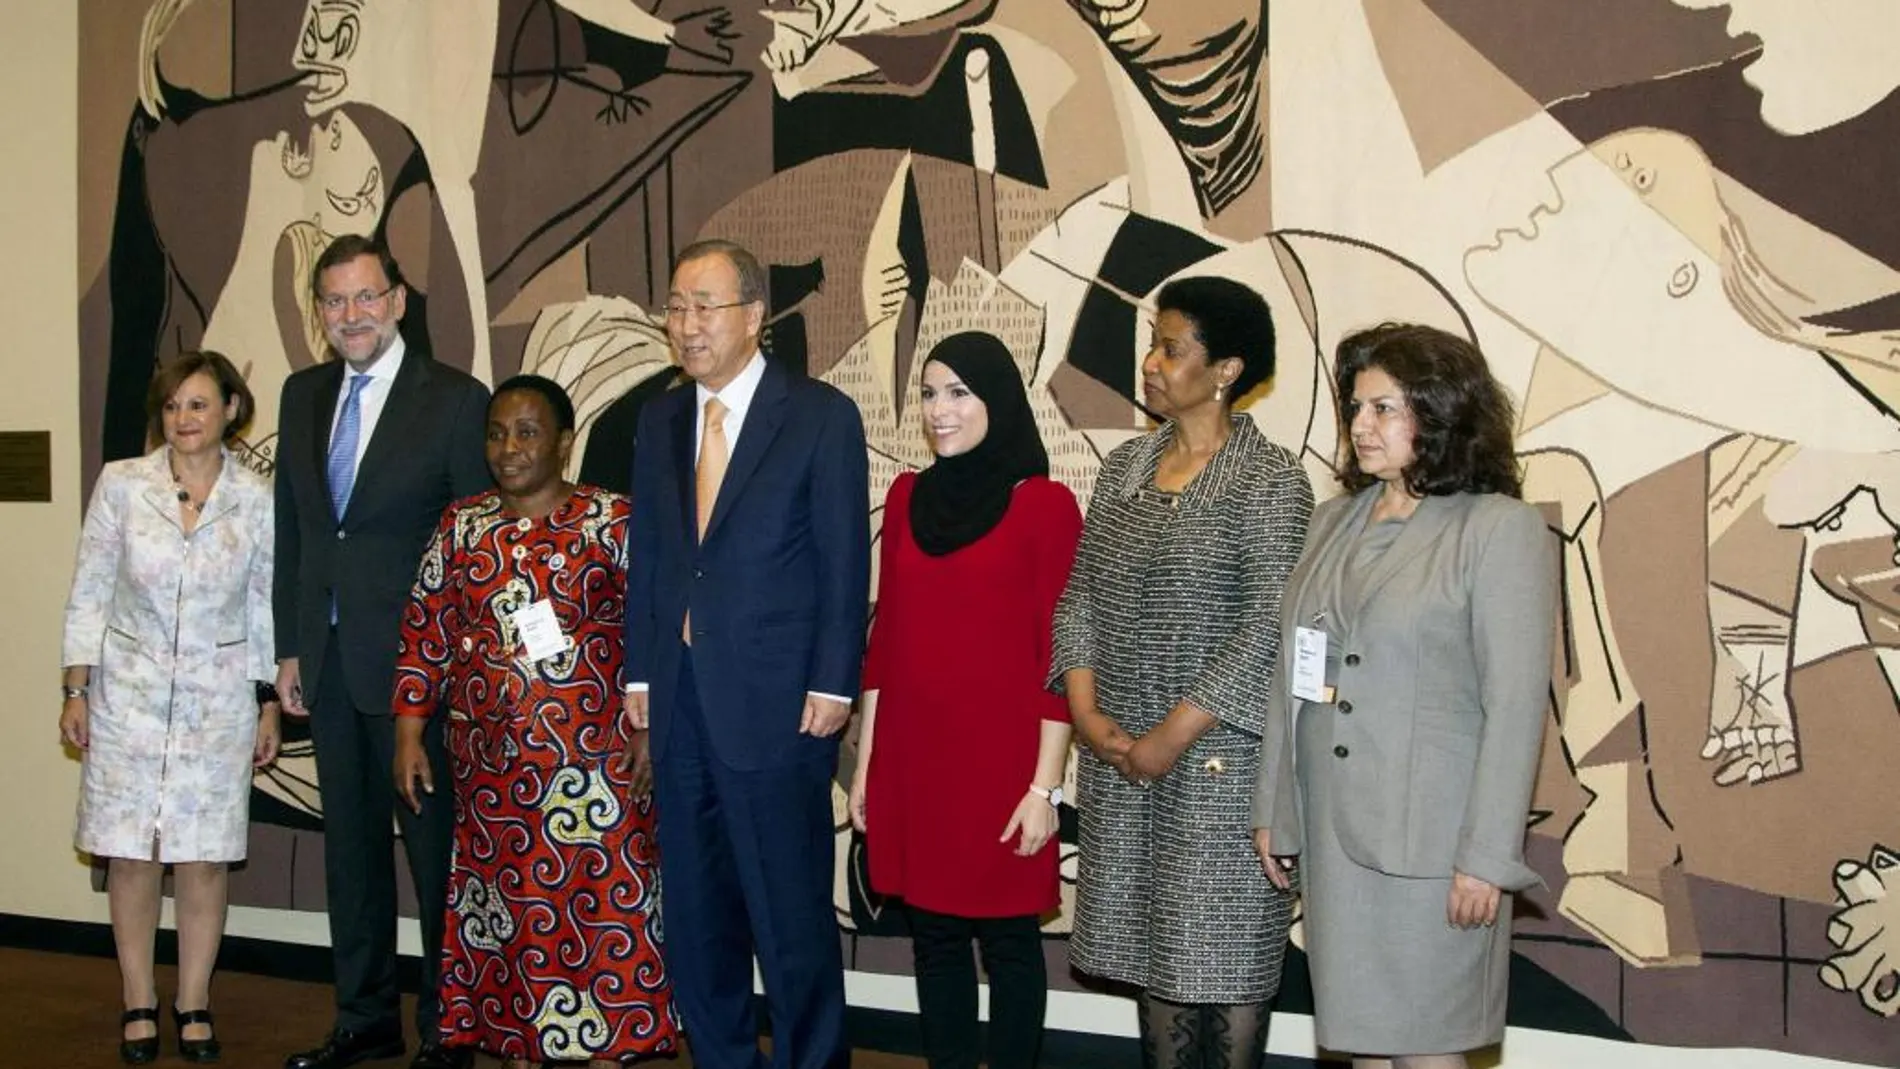 El presidente del Gobierno, Mariano Rajoy (2i), junto al secretario general de la ONU, Ban Ki-moon, posan con miembros de organizaciones de Mujeres, antes de asistir a la sesión del Consejo de Seguridad de Naciones Unidas